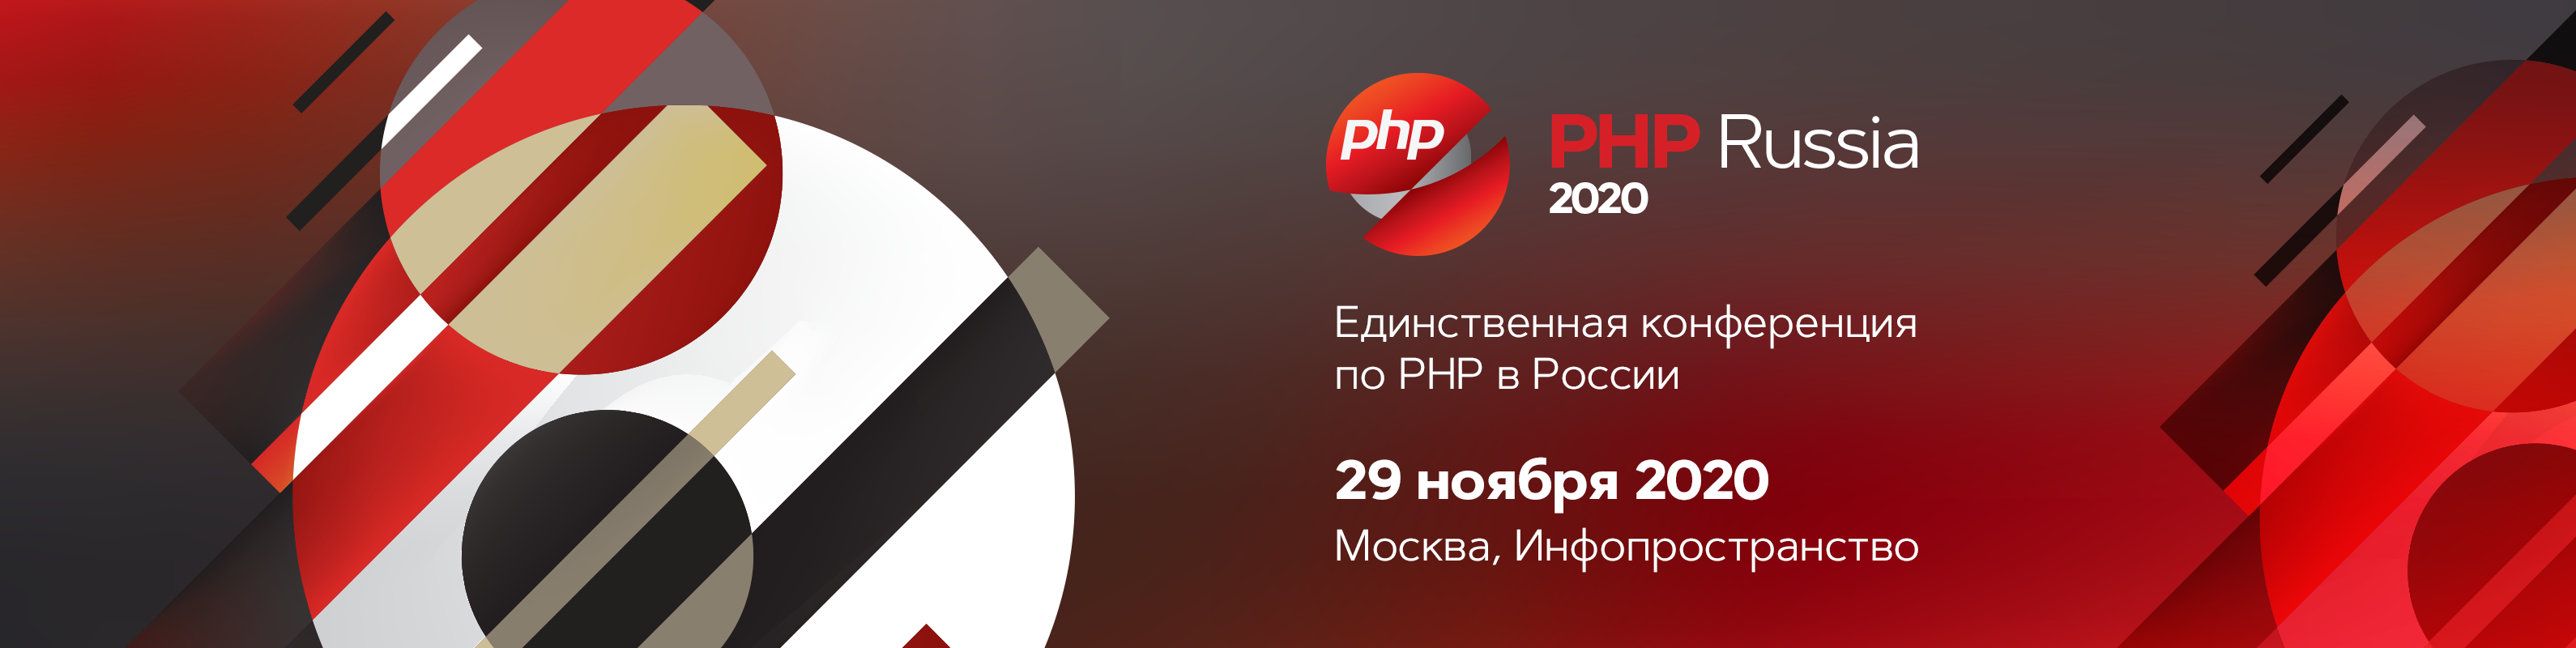 Улучшения покрытия PHP кода в 2020 году - 8